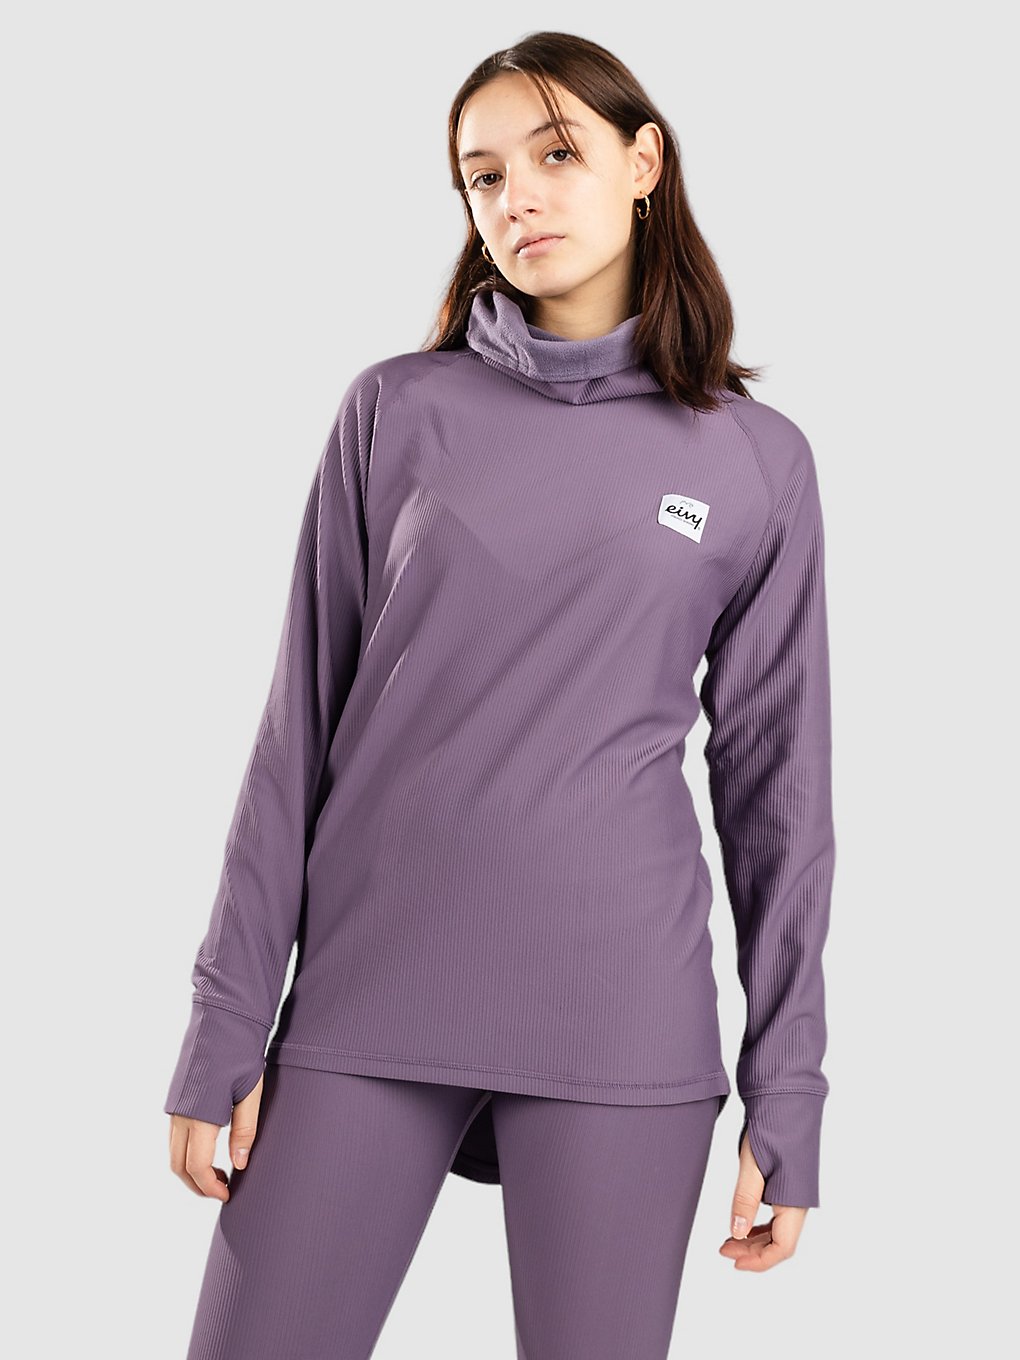 Eivy Icecold Gaiter Rib Top Funktionsshirt deep purple kaufen